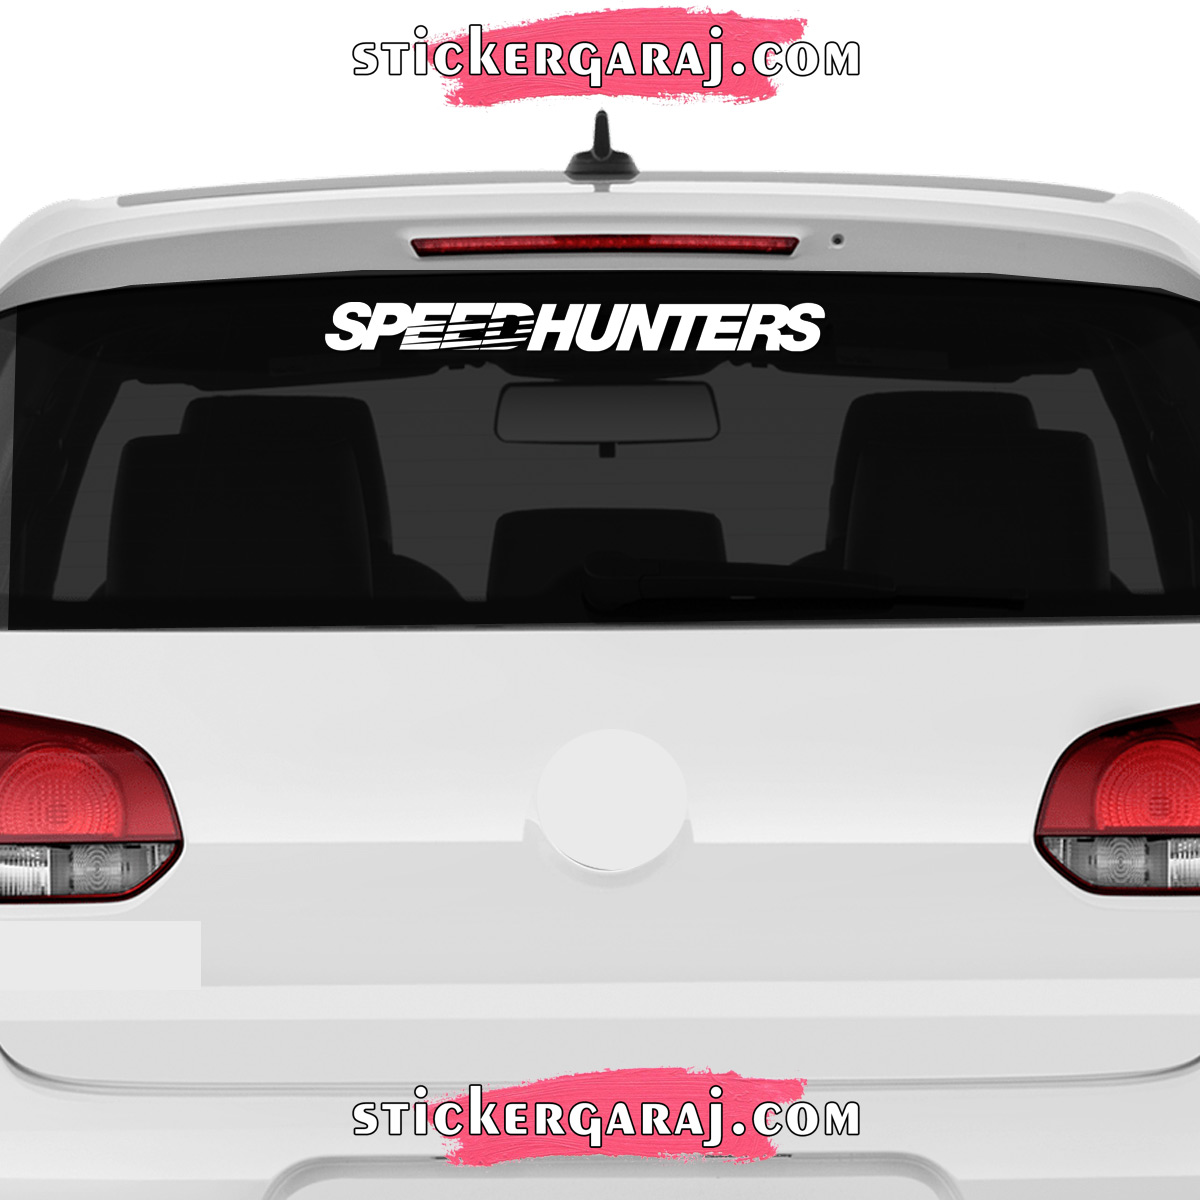 Toyota cam sticker - Toyota cam sticker - speedhunters